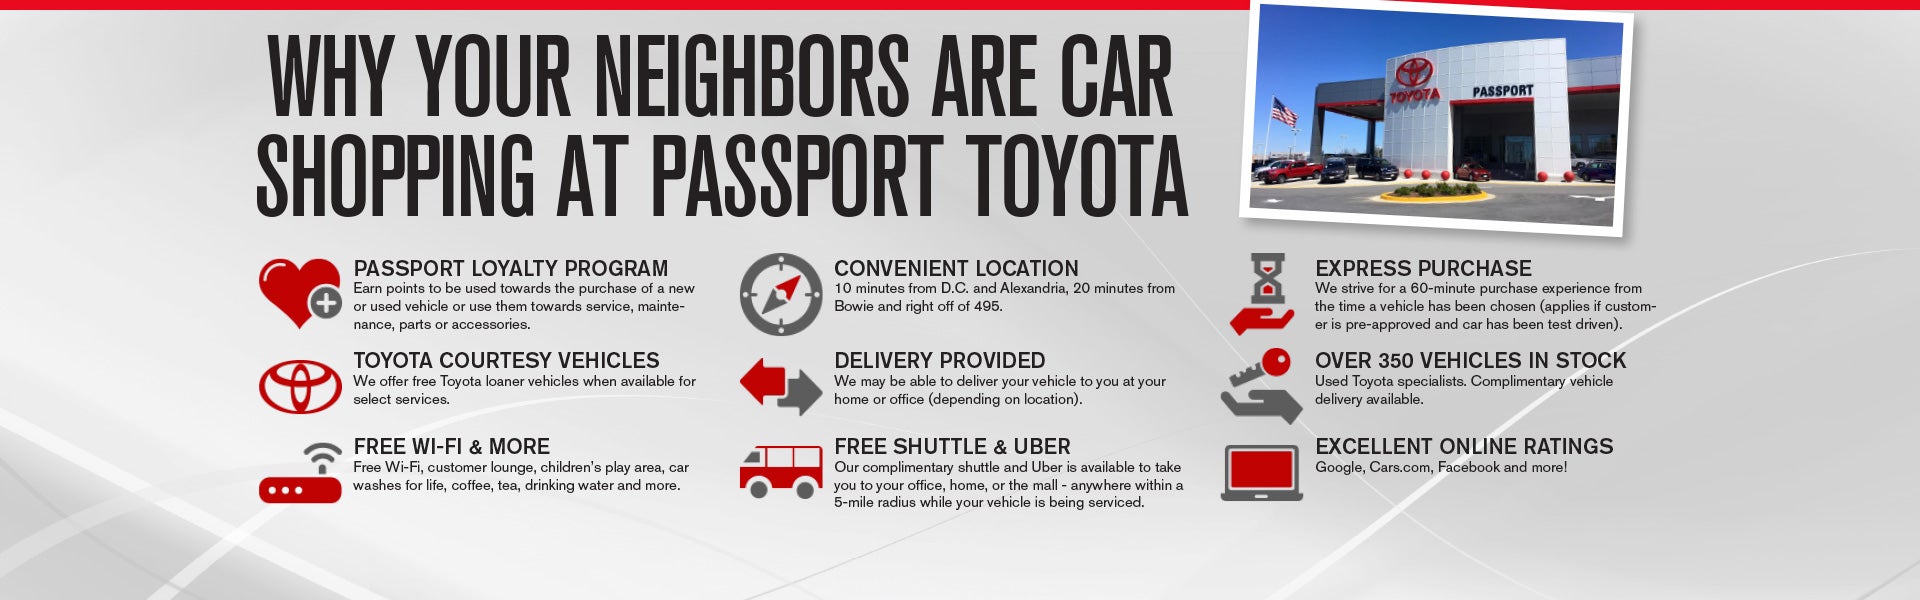 Why Buy at Passport Toyota